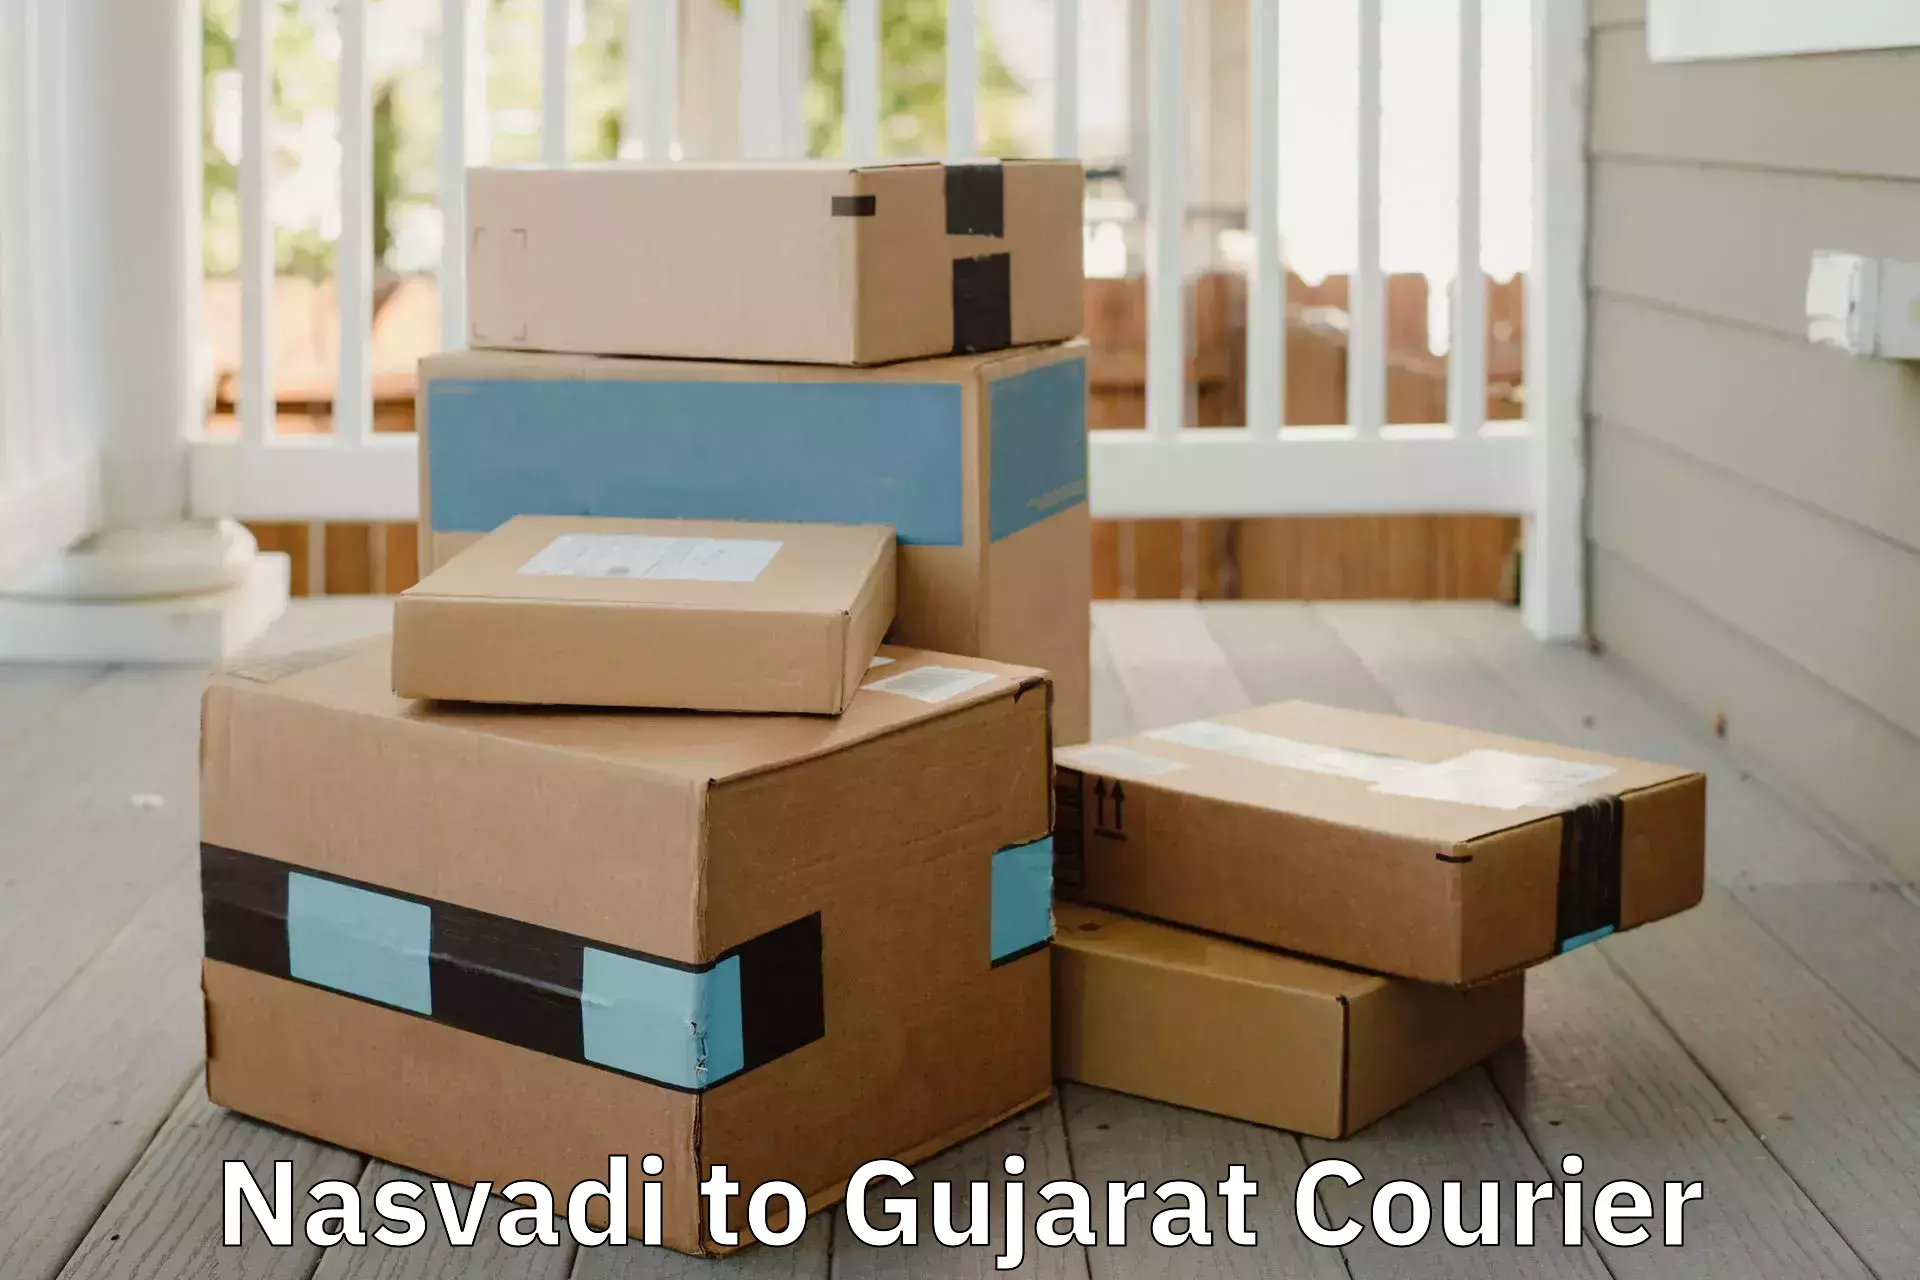 Professional movers Nasvadi to Ahmedabad